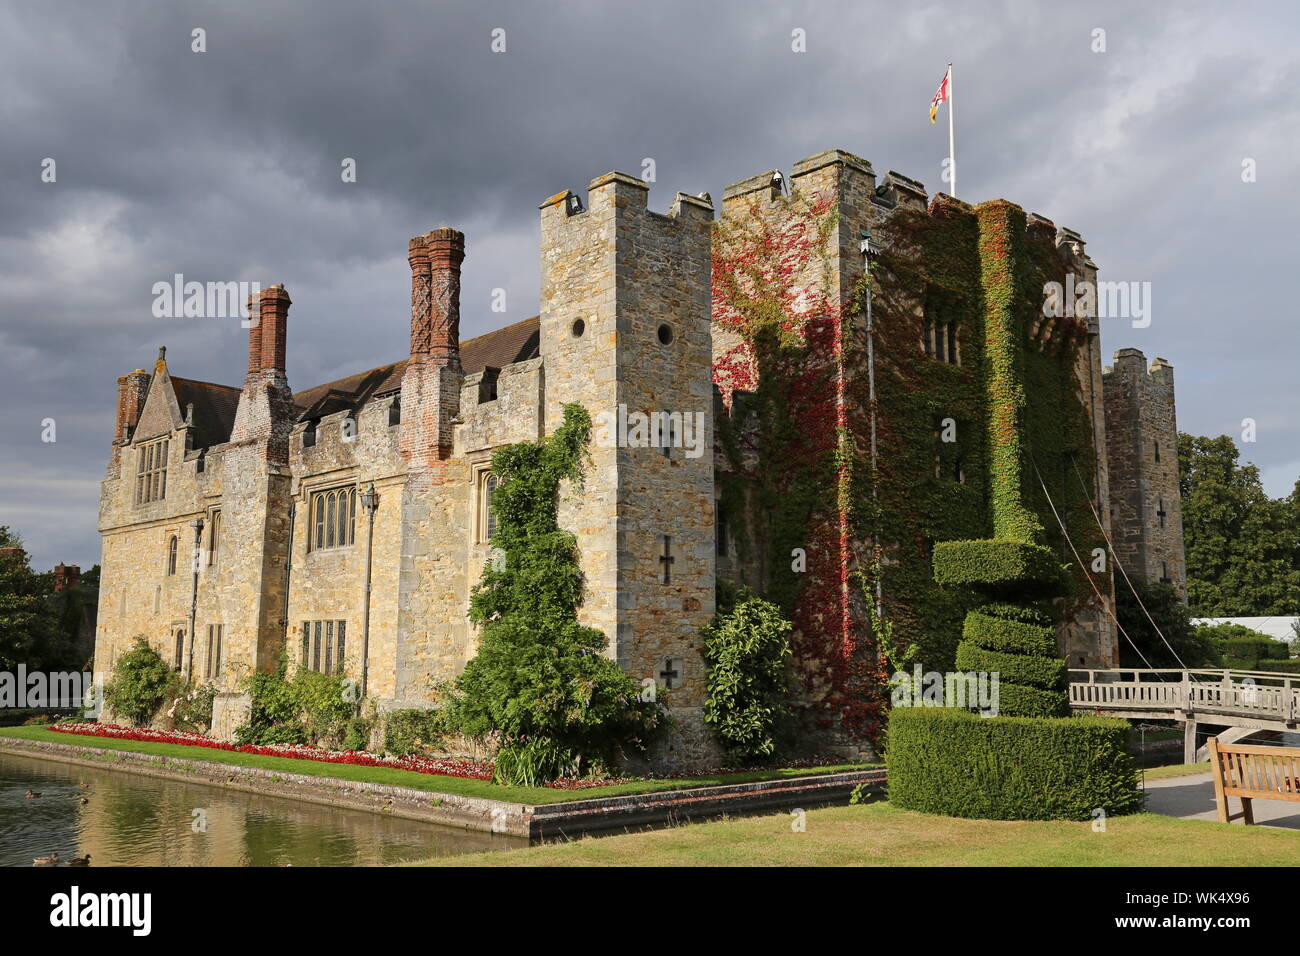 Le château de Hever, Hever, Edenbridge, Kent, Angleterre, Grande-Bretagne, Royaume-Uni, UK, Europe Banque D'Images